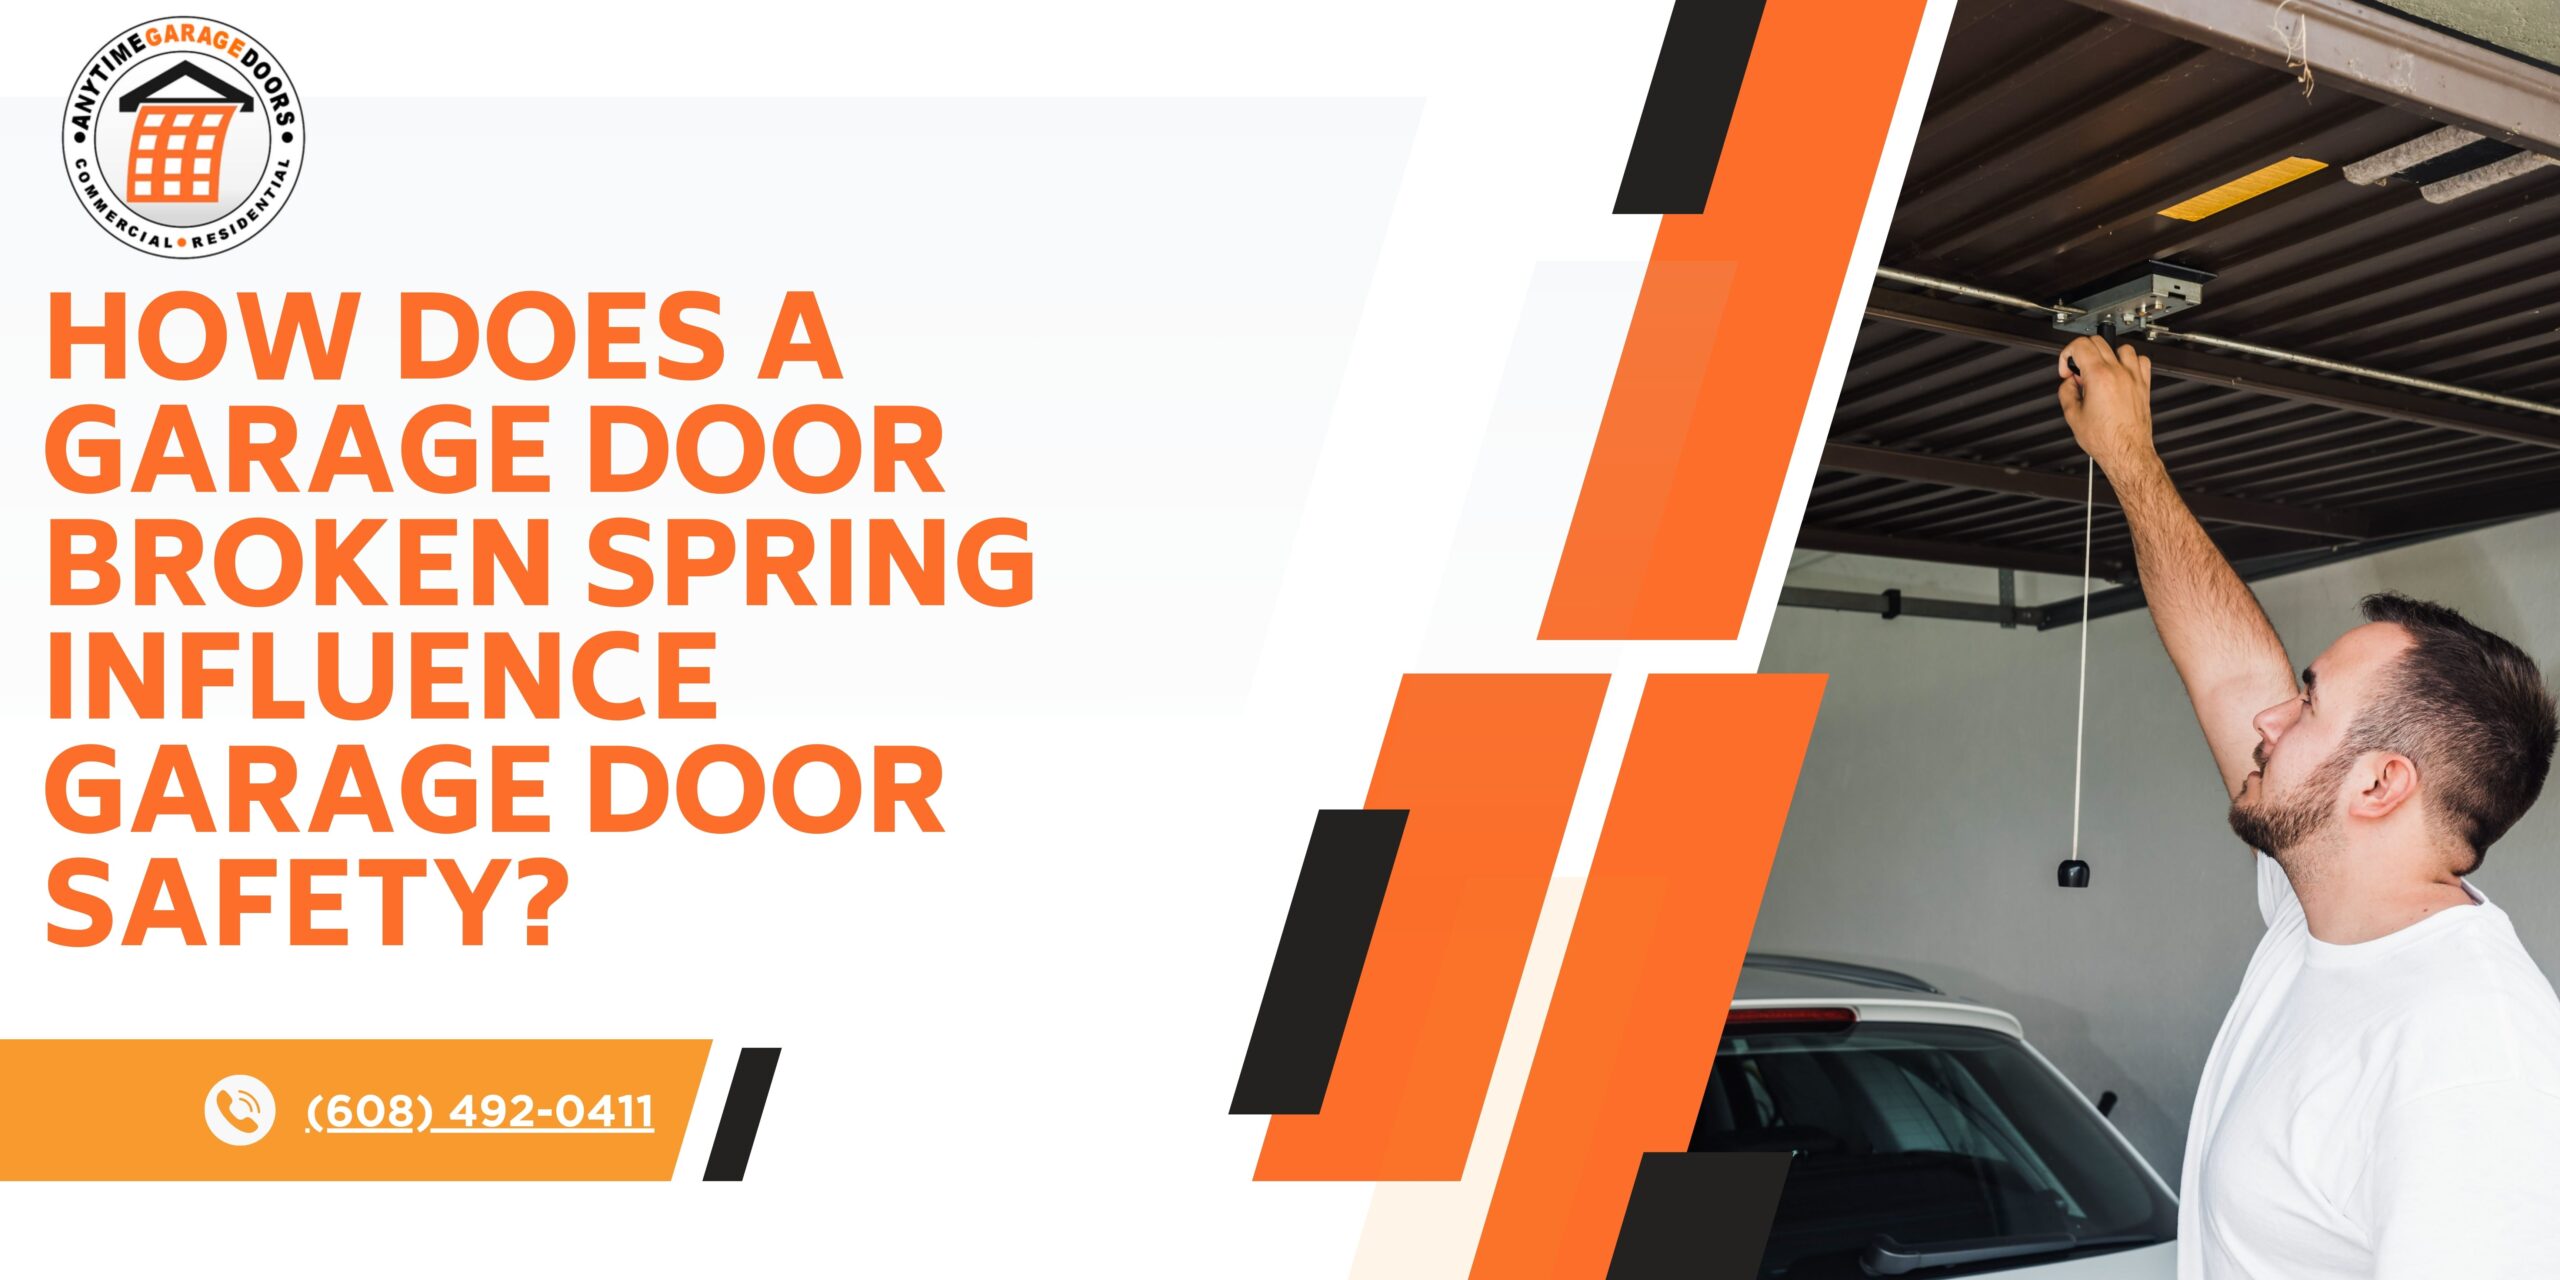 How Does a Garage Door Broken Spring Influence Garage Door Safety